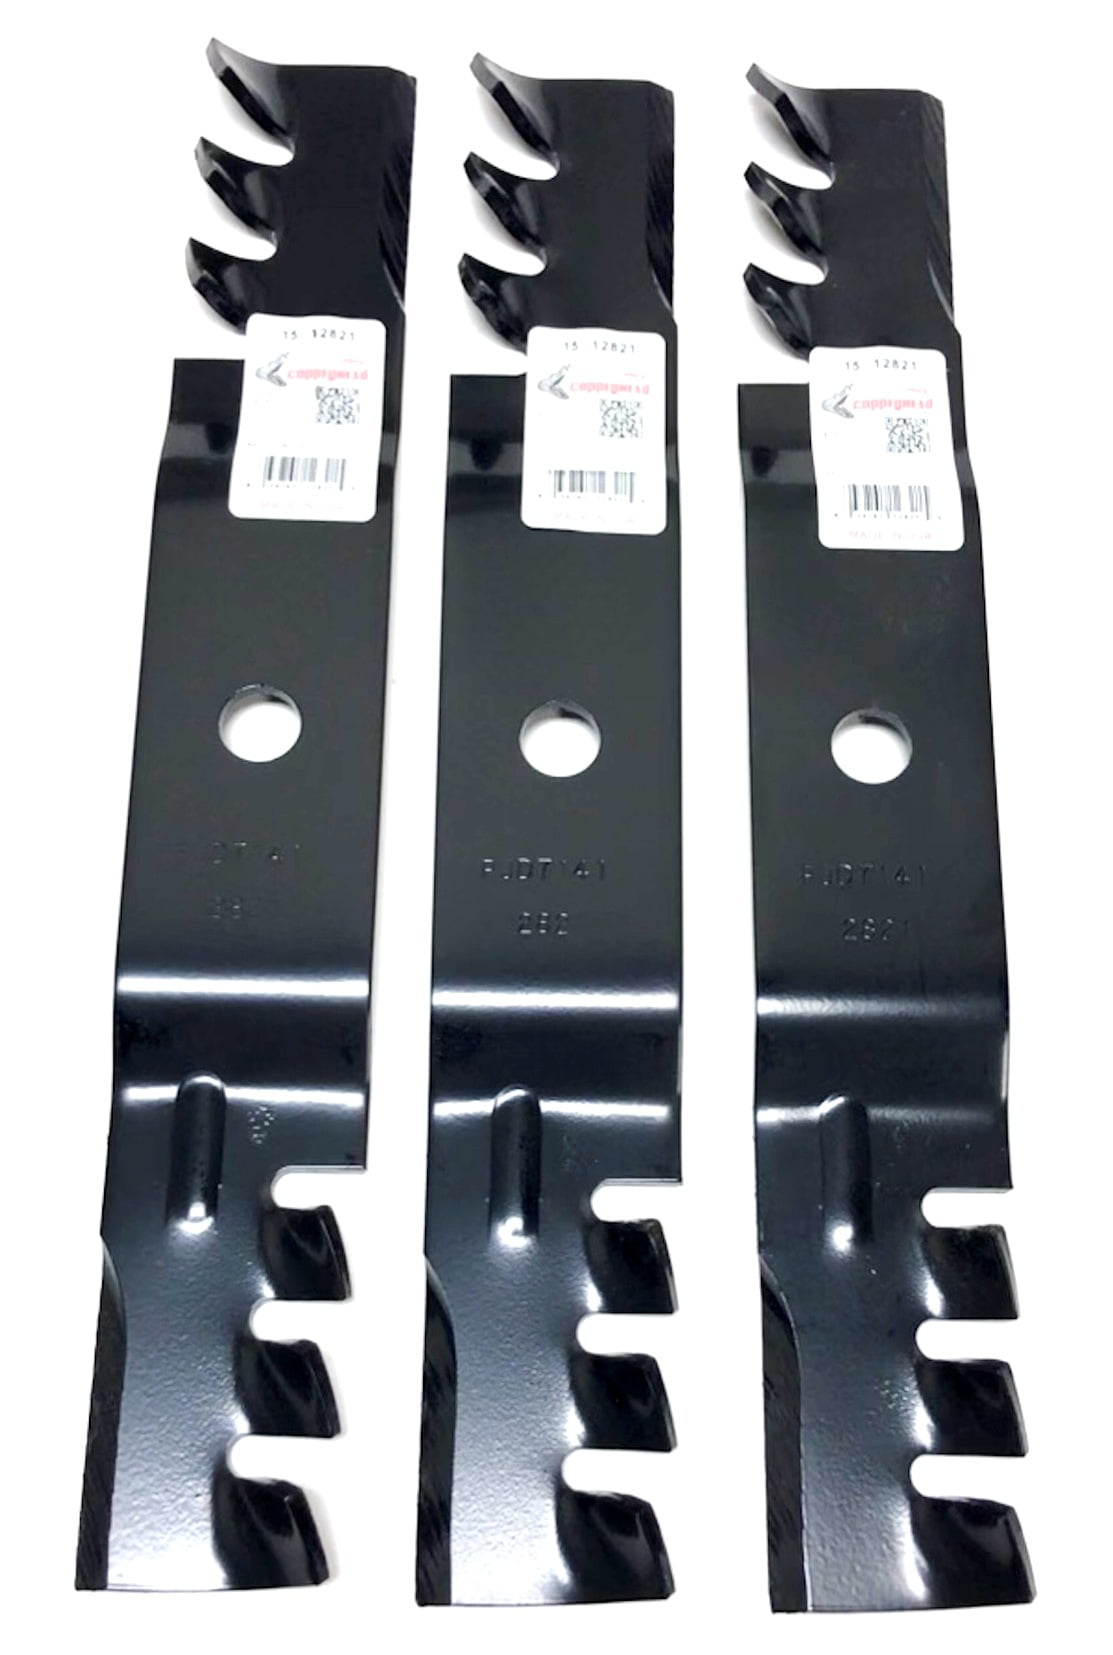 3 Mower Blades for John Deere® M127500 M145476 X300 X304 X320 X500 X324 48" Deck 